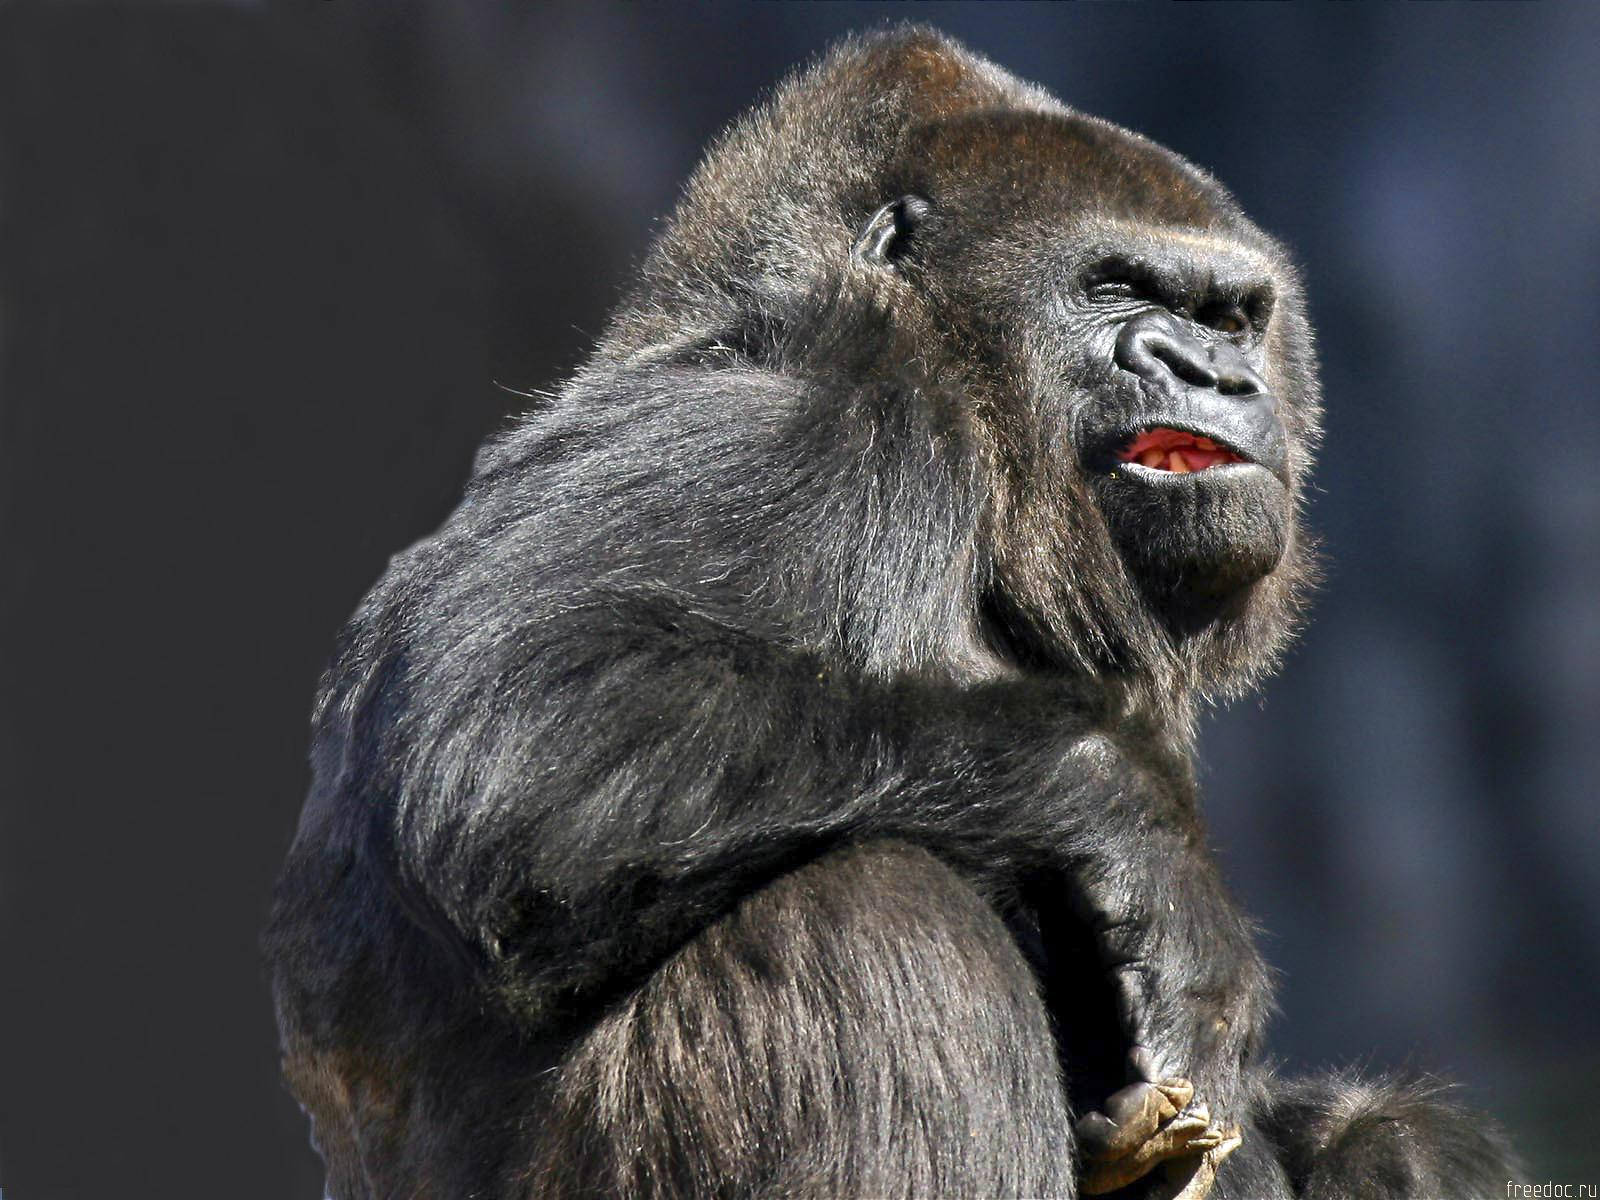 groovy gorilla background